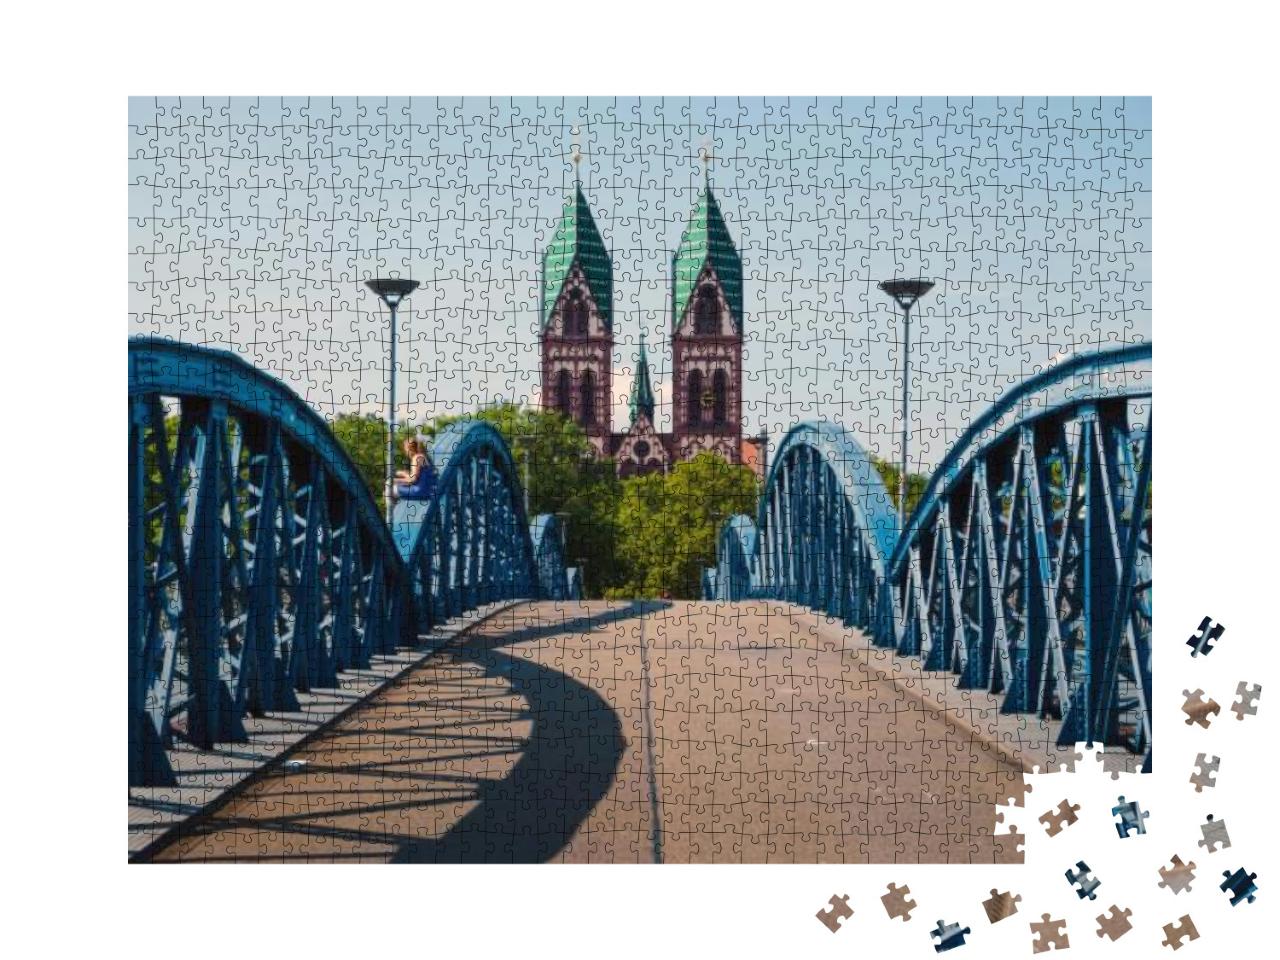 Herz Jesu Kirche, Freiburg, Germany... Jigsaw Puzzle with 1000 pieces